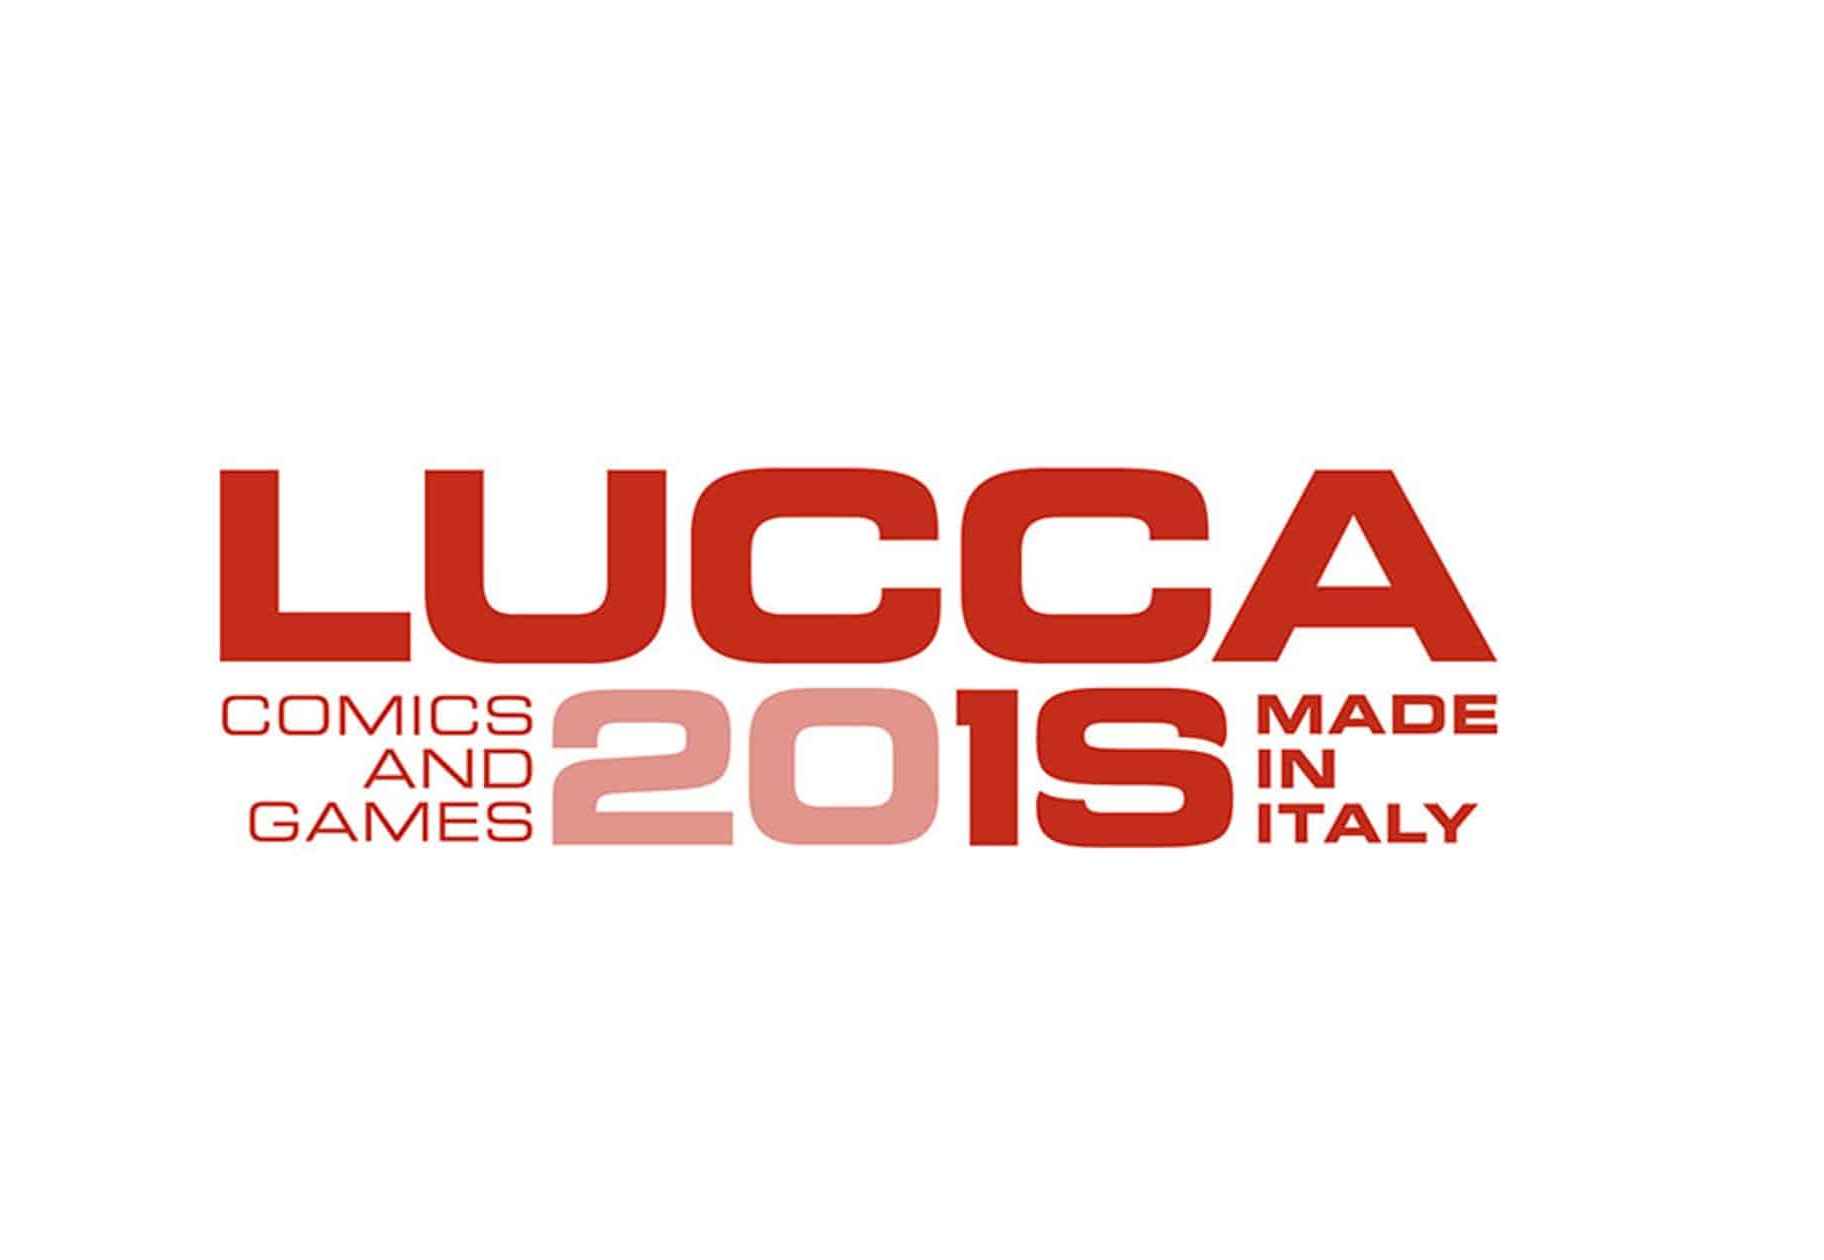 Lucca Comics & Games 2018